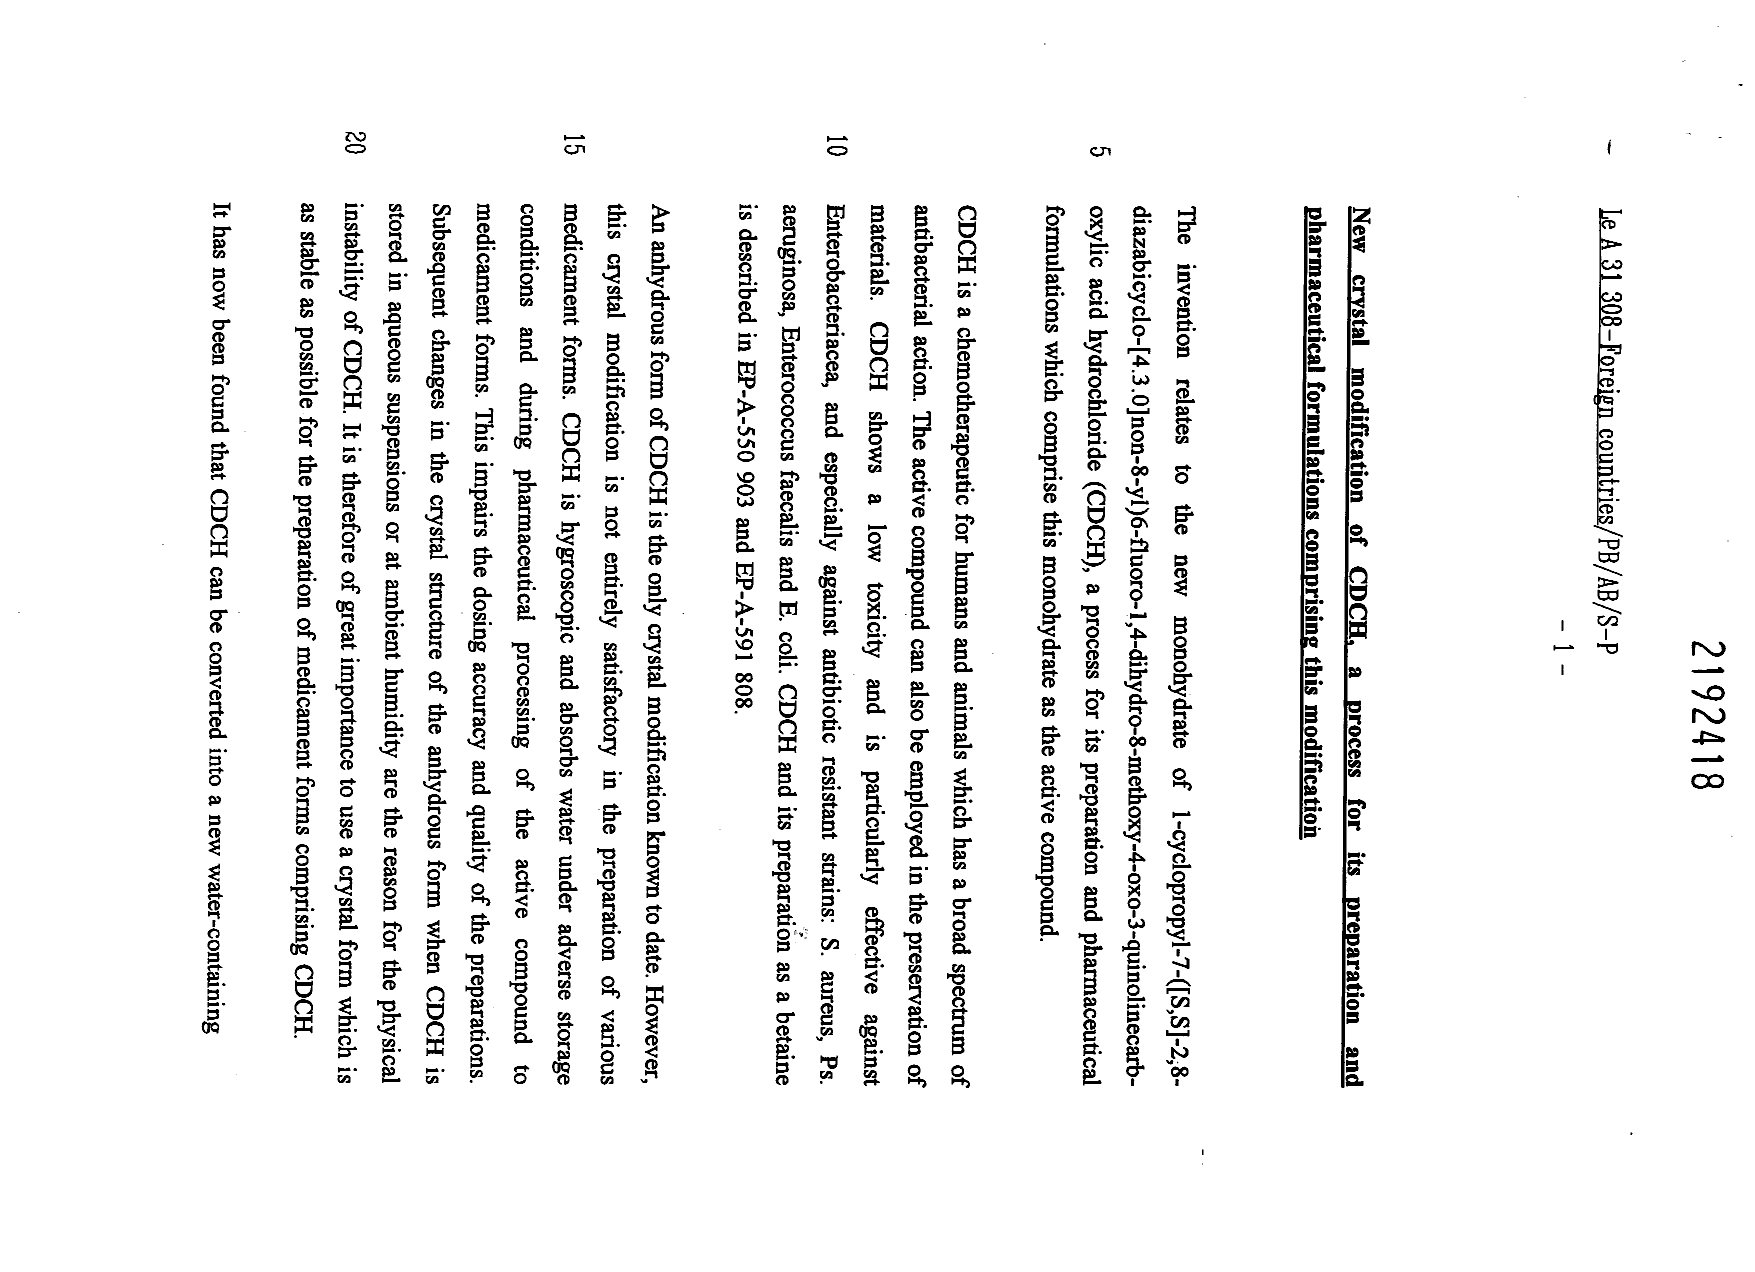 Document de brevet canadien 2192418. Description 19961209. Image 1 de 12